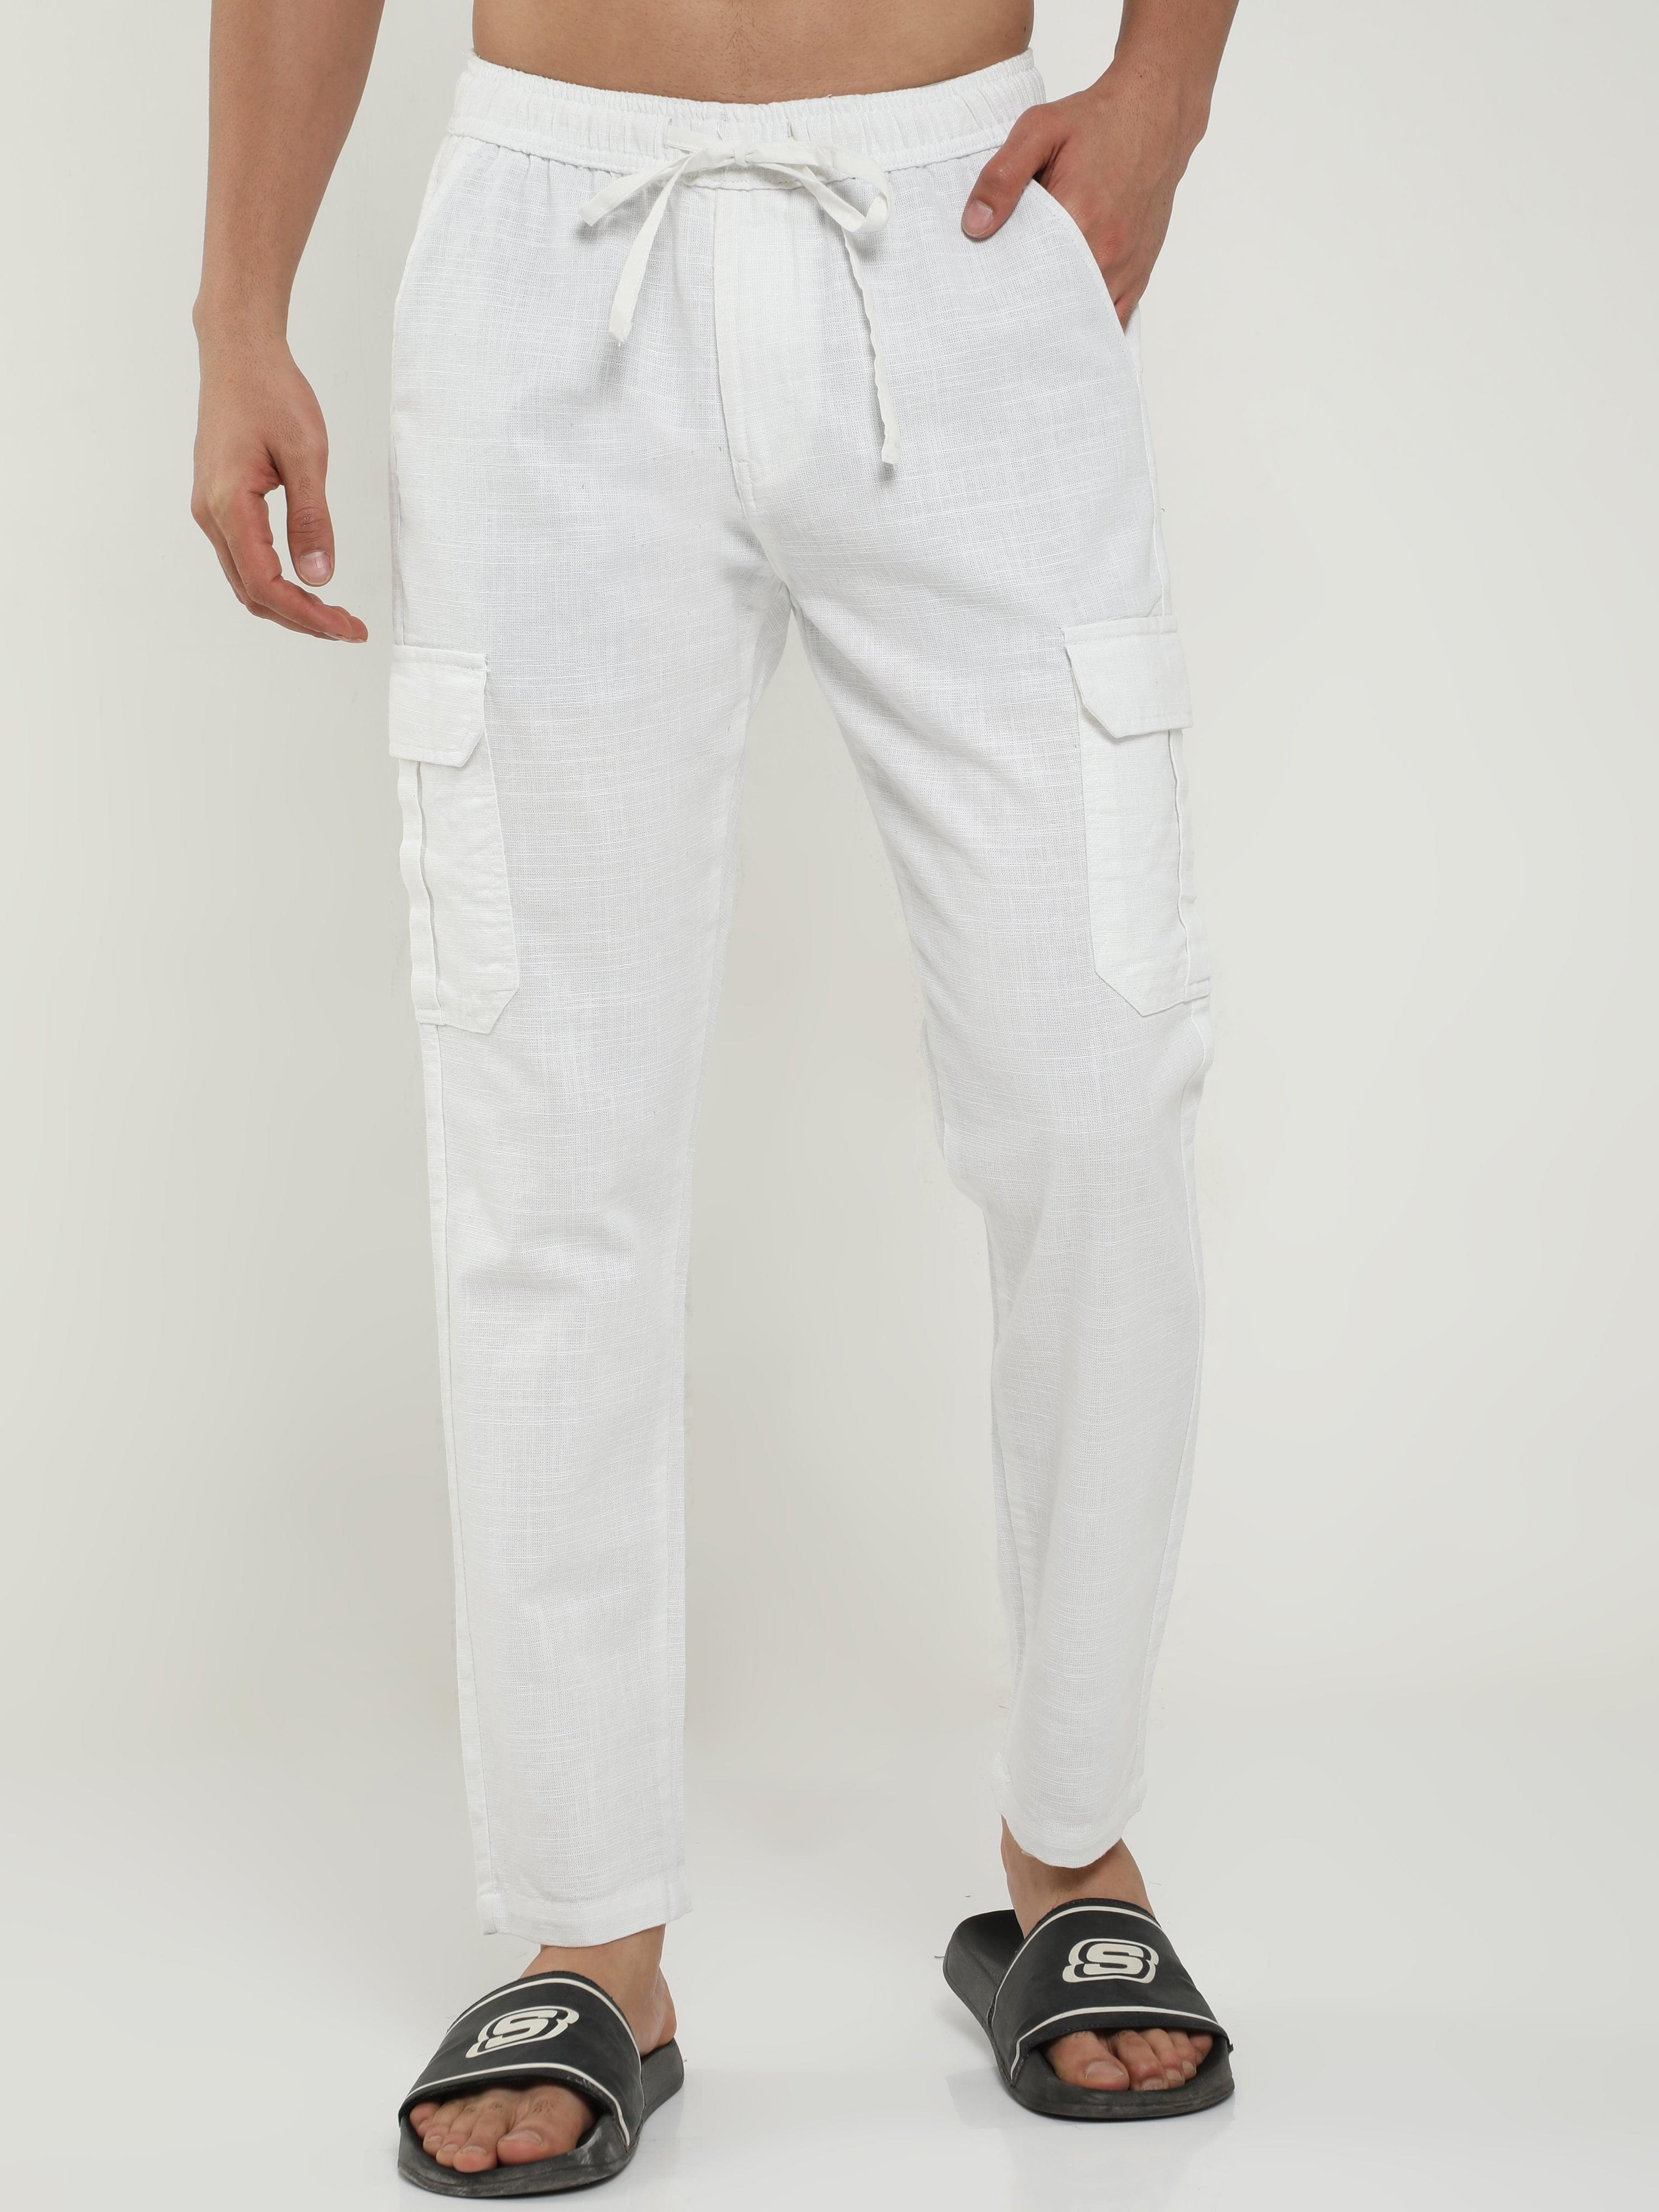 Emperor Pants|men's Slim Fit Business Suit Pants - Zipper Fly, Polyester  Cotton Blend